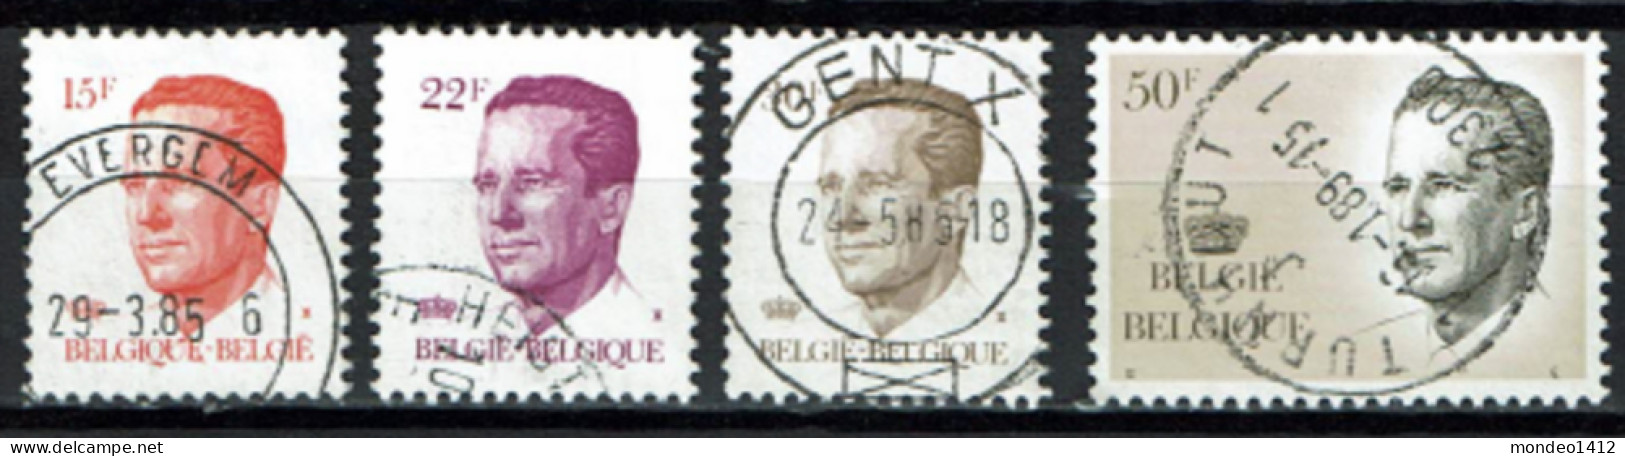 België 1984 OBP 2124/2127 - Série Courante Baudouin "Velghe" - Usados